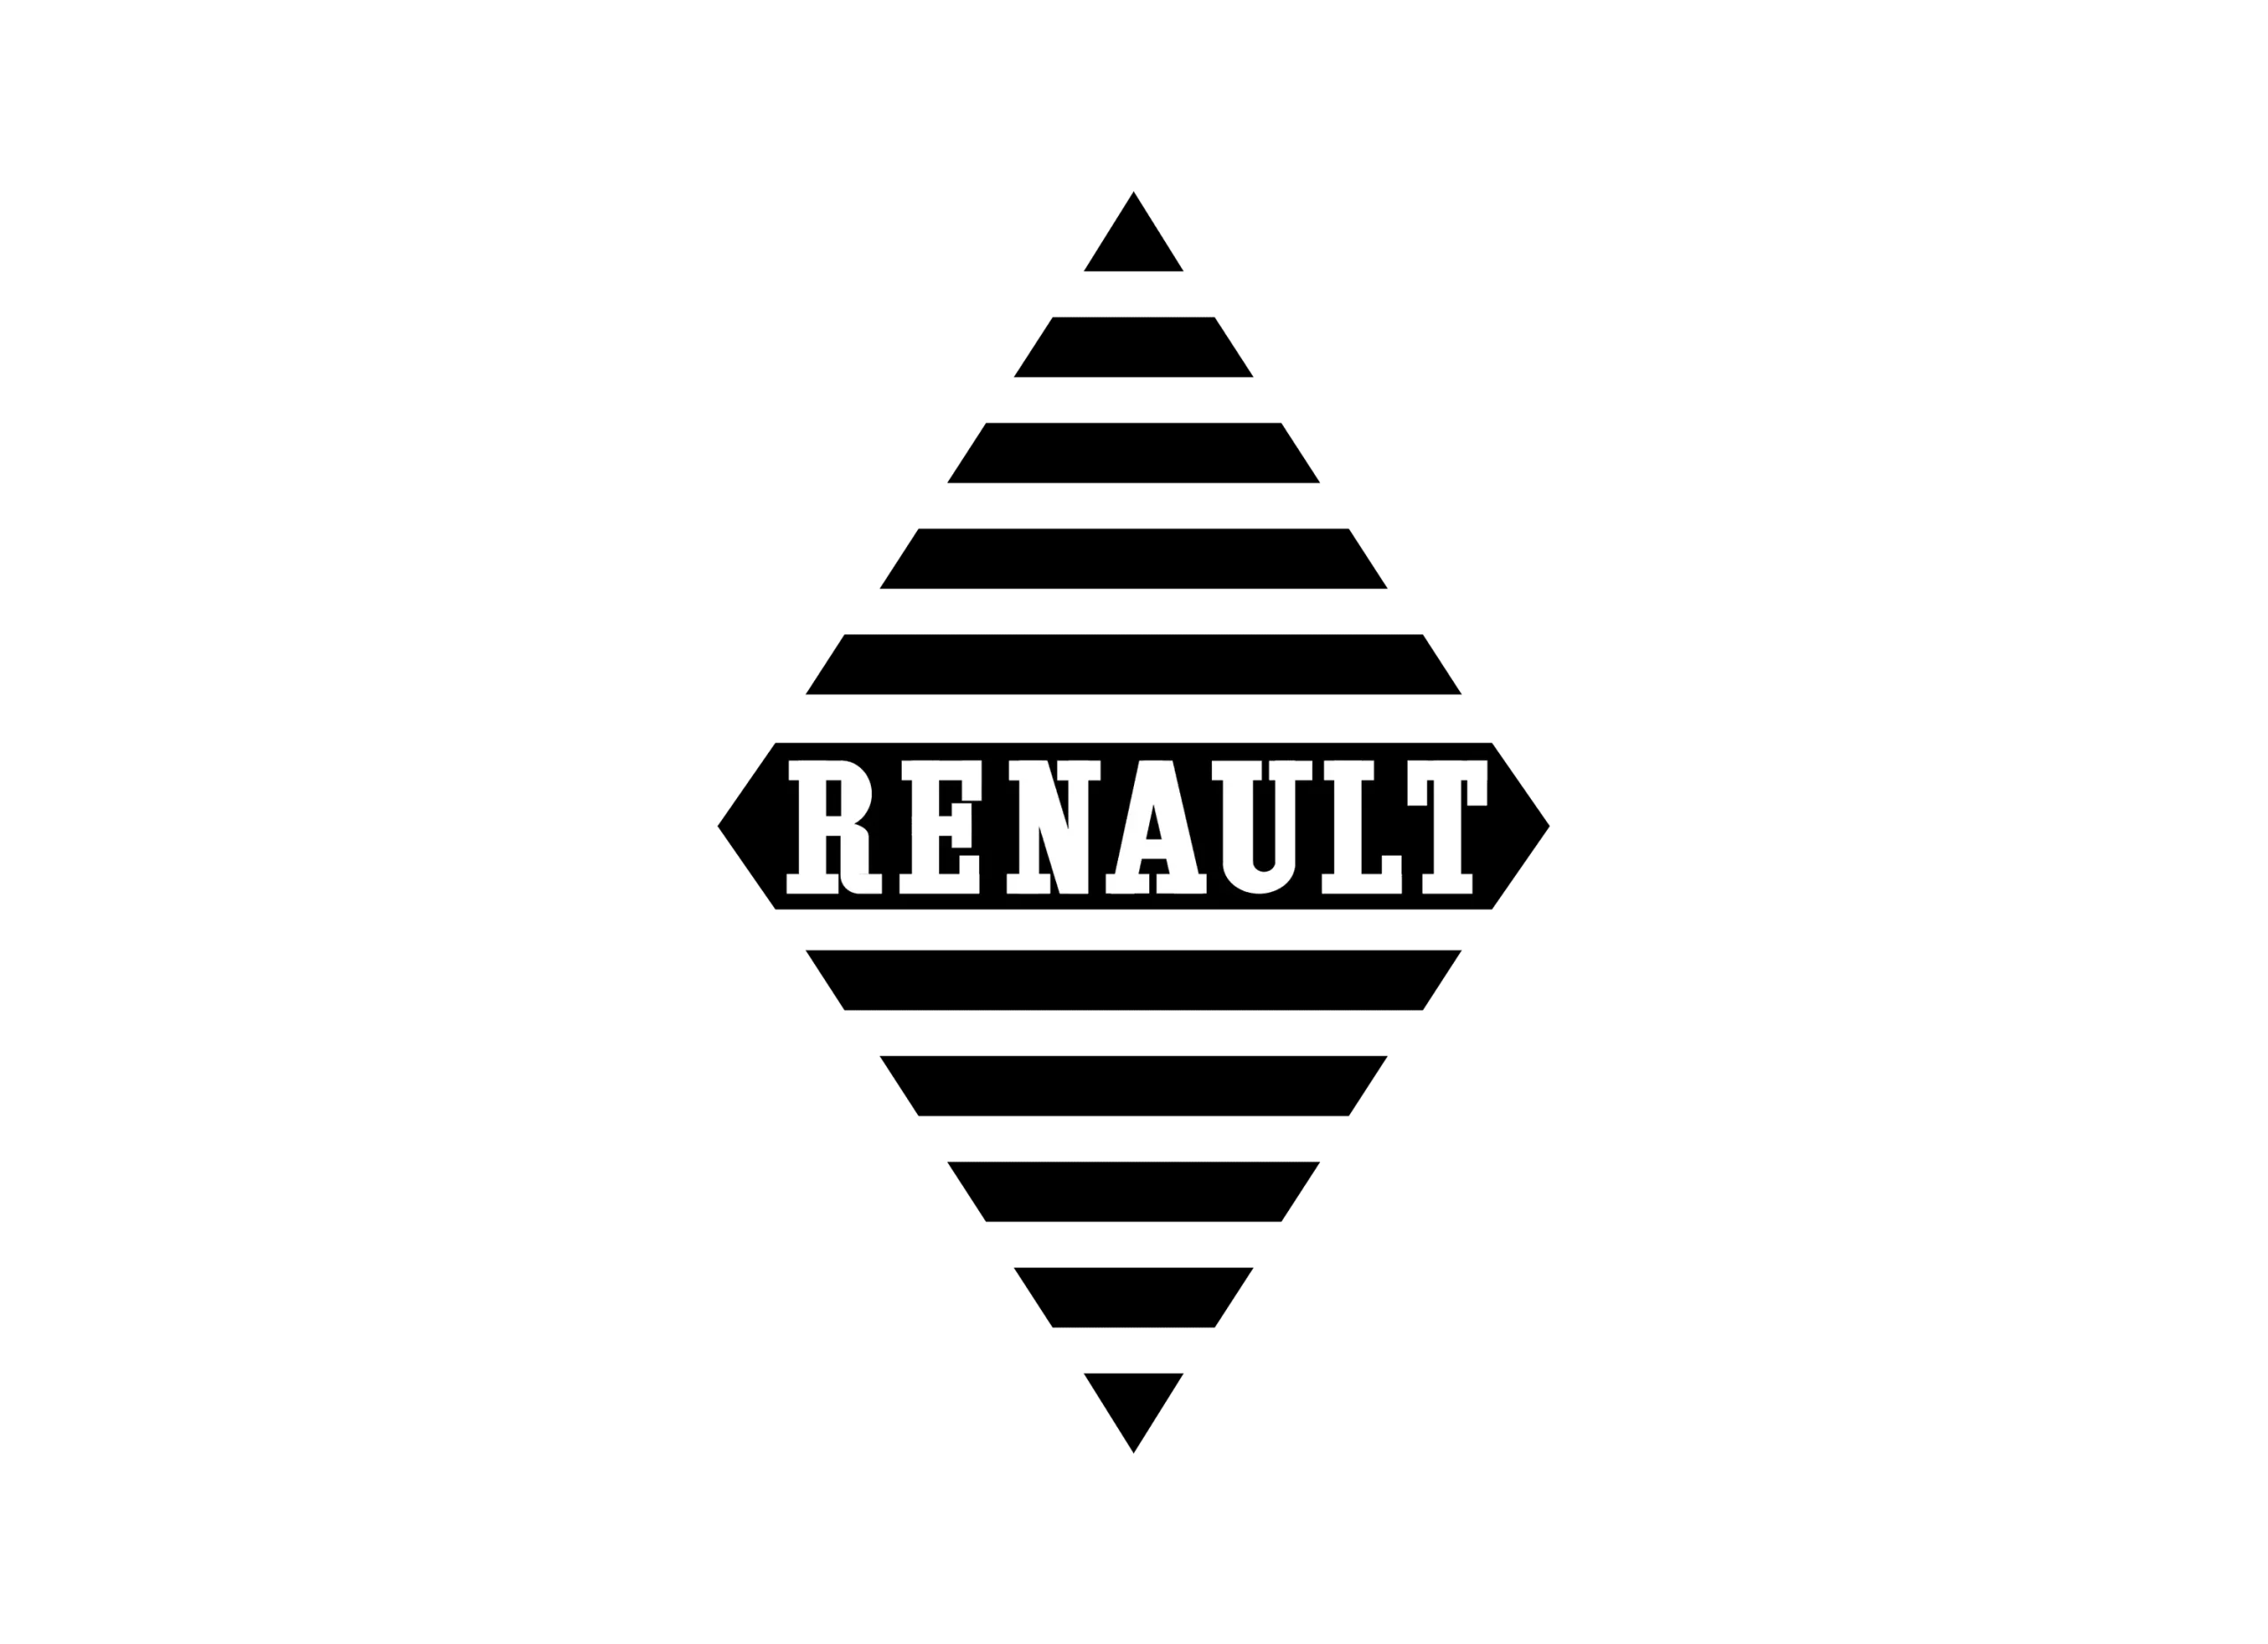 Renault logo 1930-1945